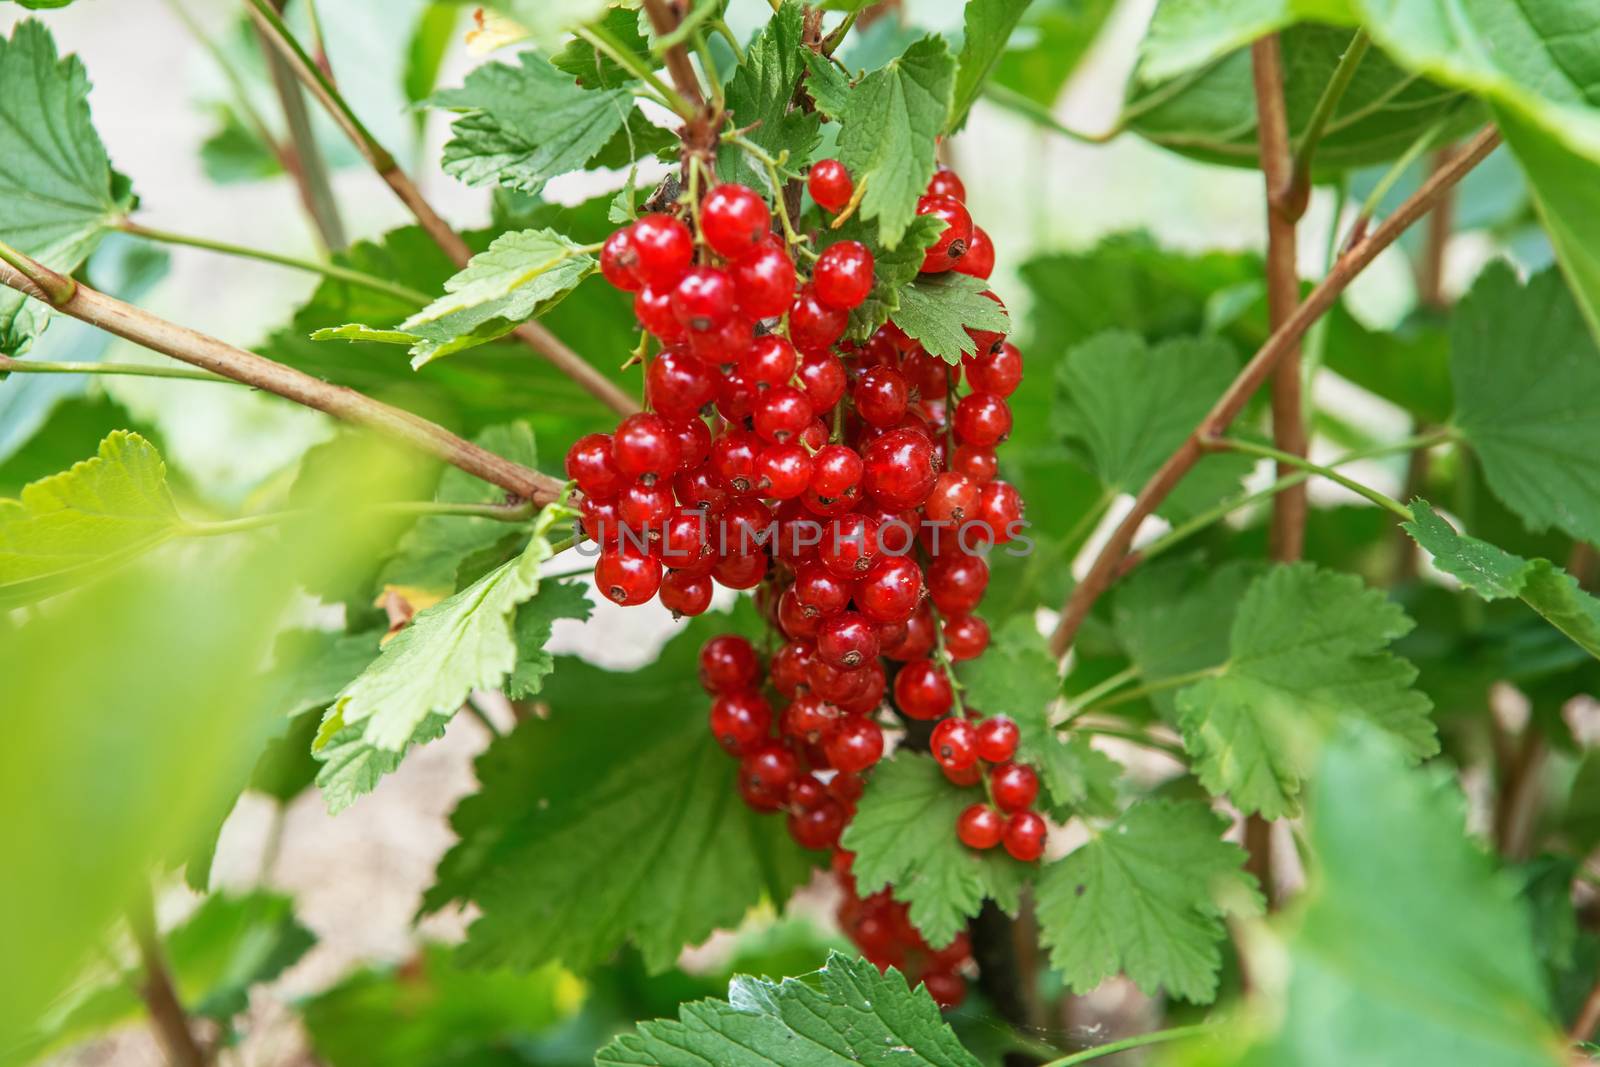 Bush of red currant berries in a garden by natazhekova